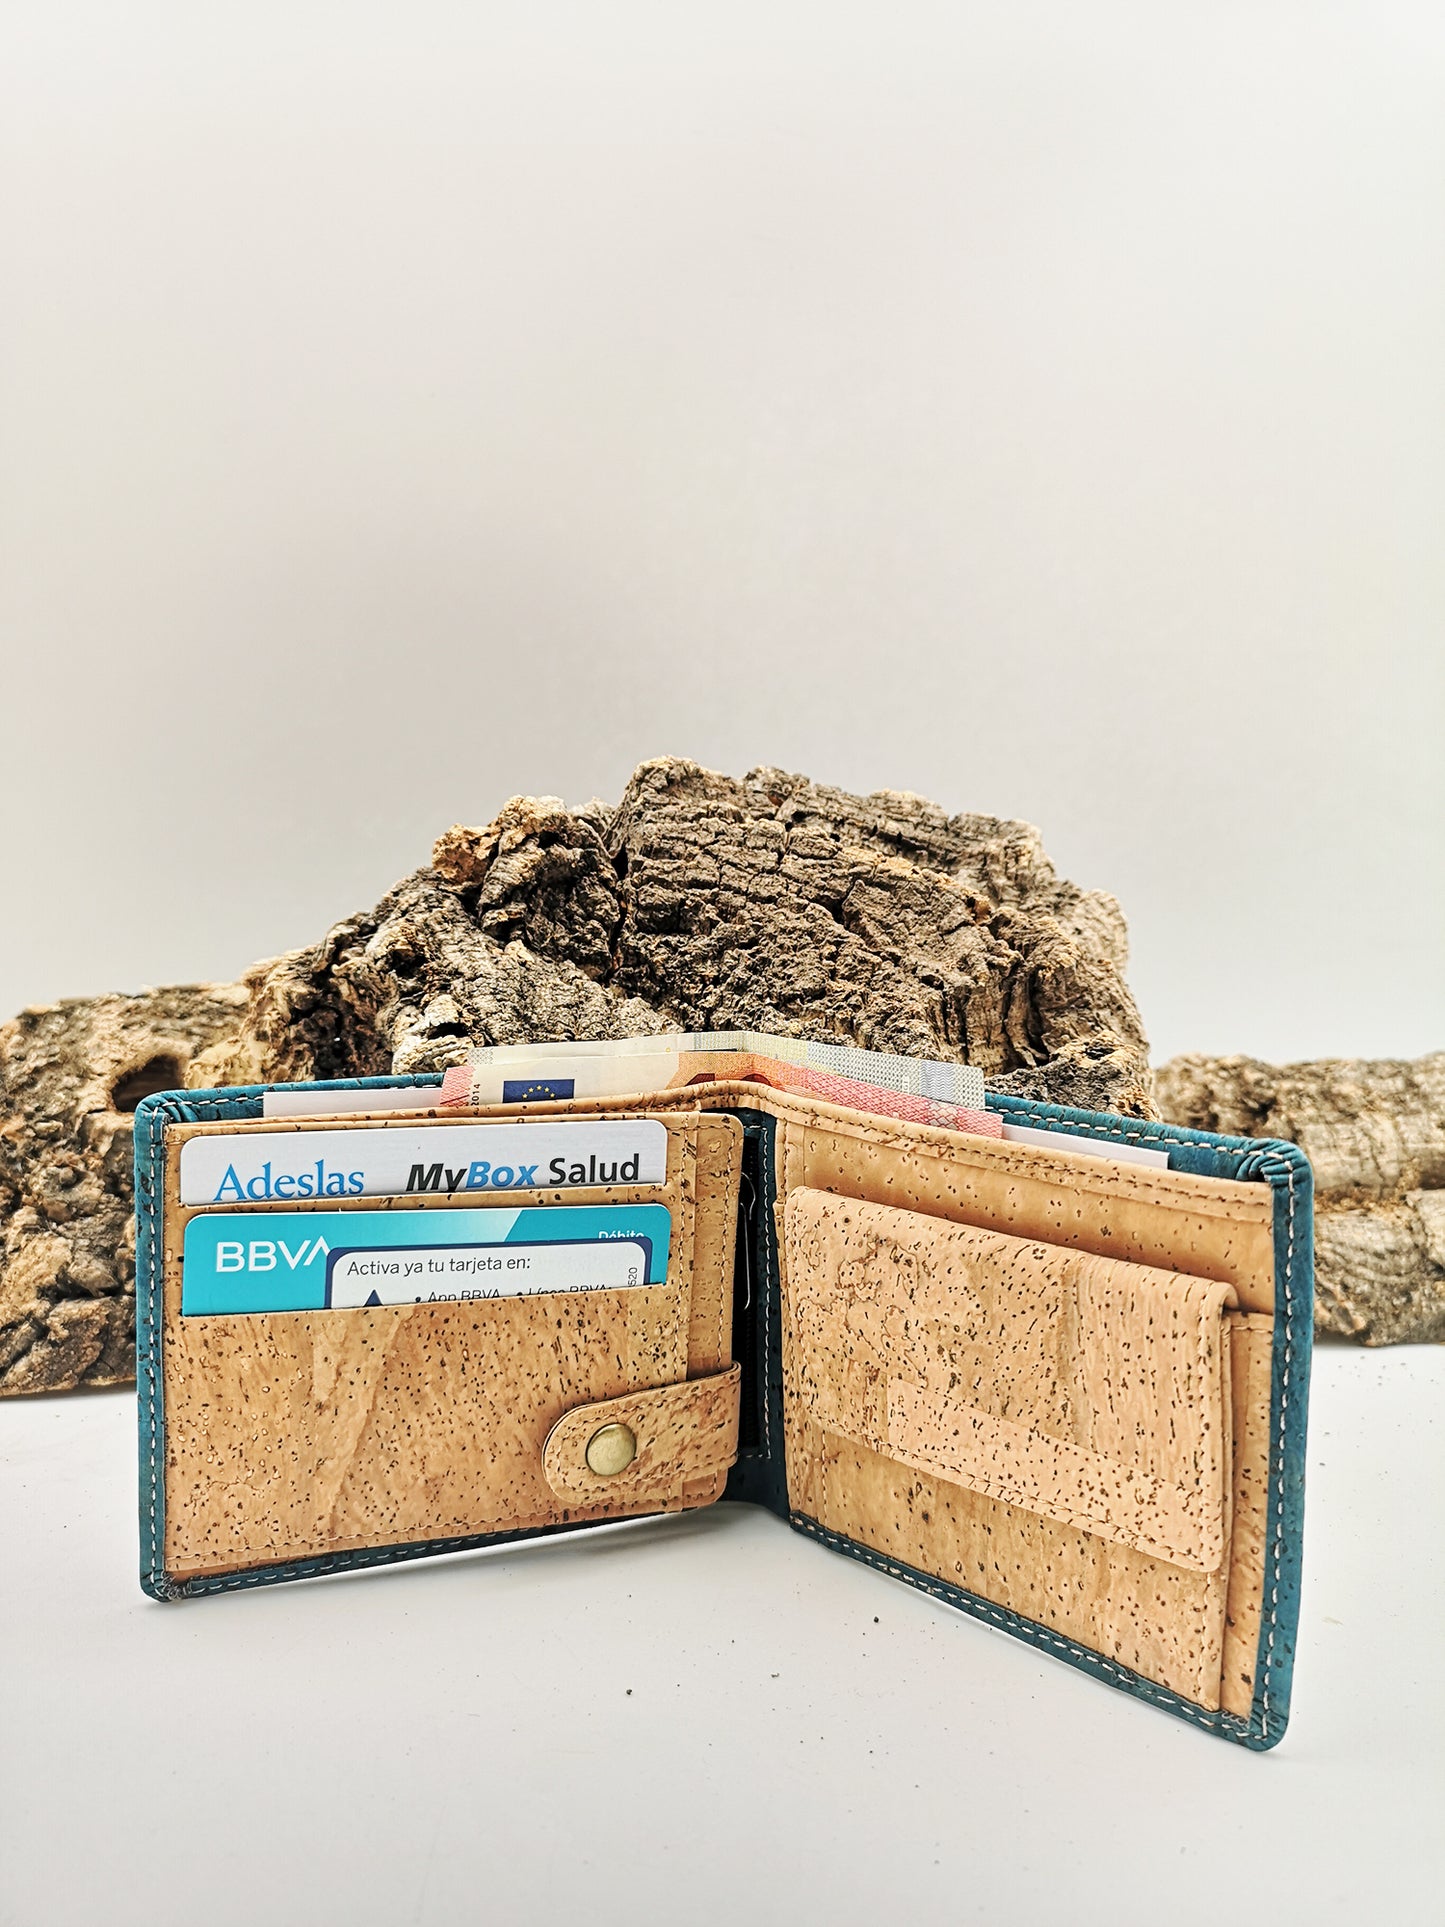 Cork Wallet for Men Vegan Wallet Eco Wallet for Men Gift for Him